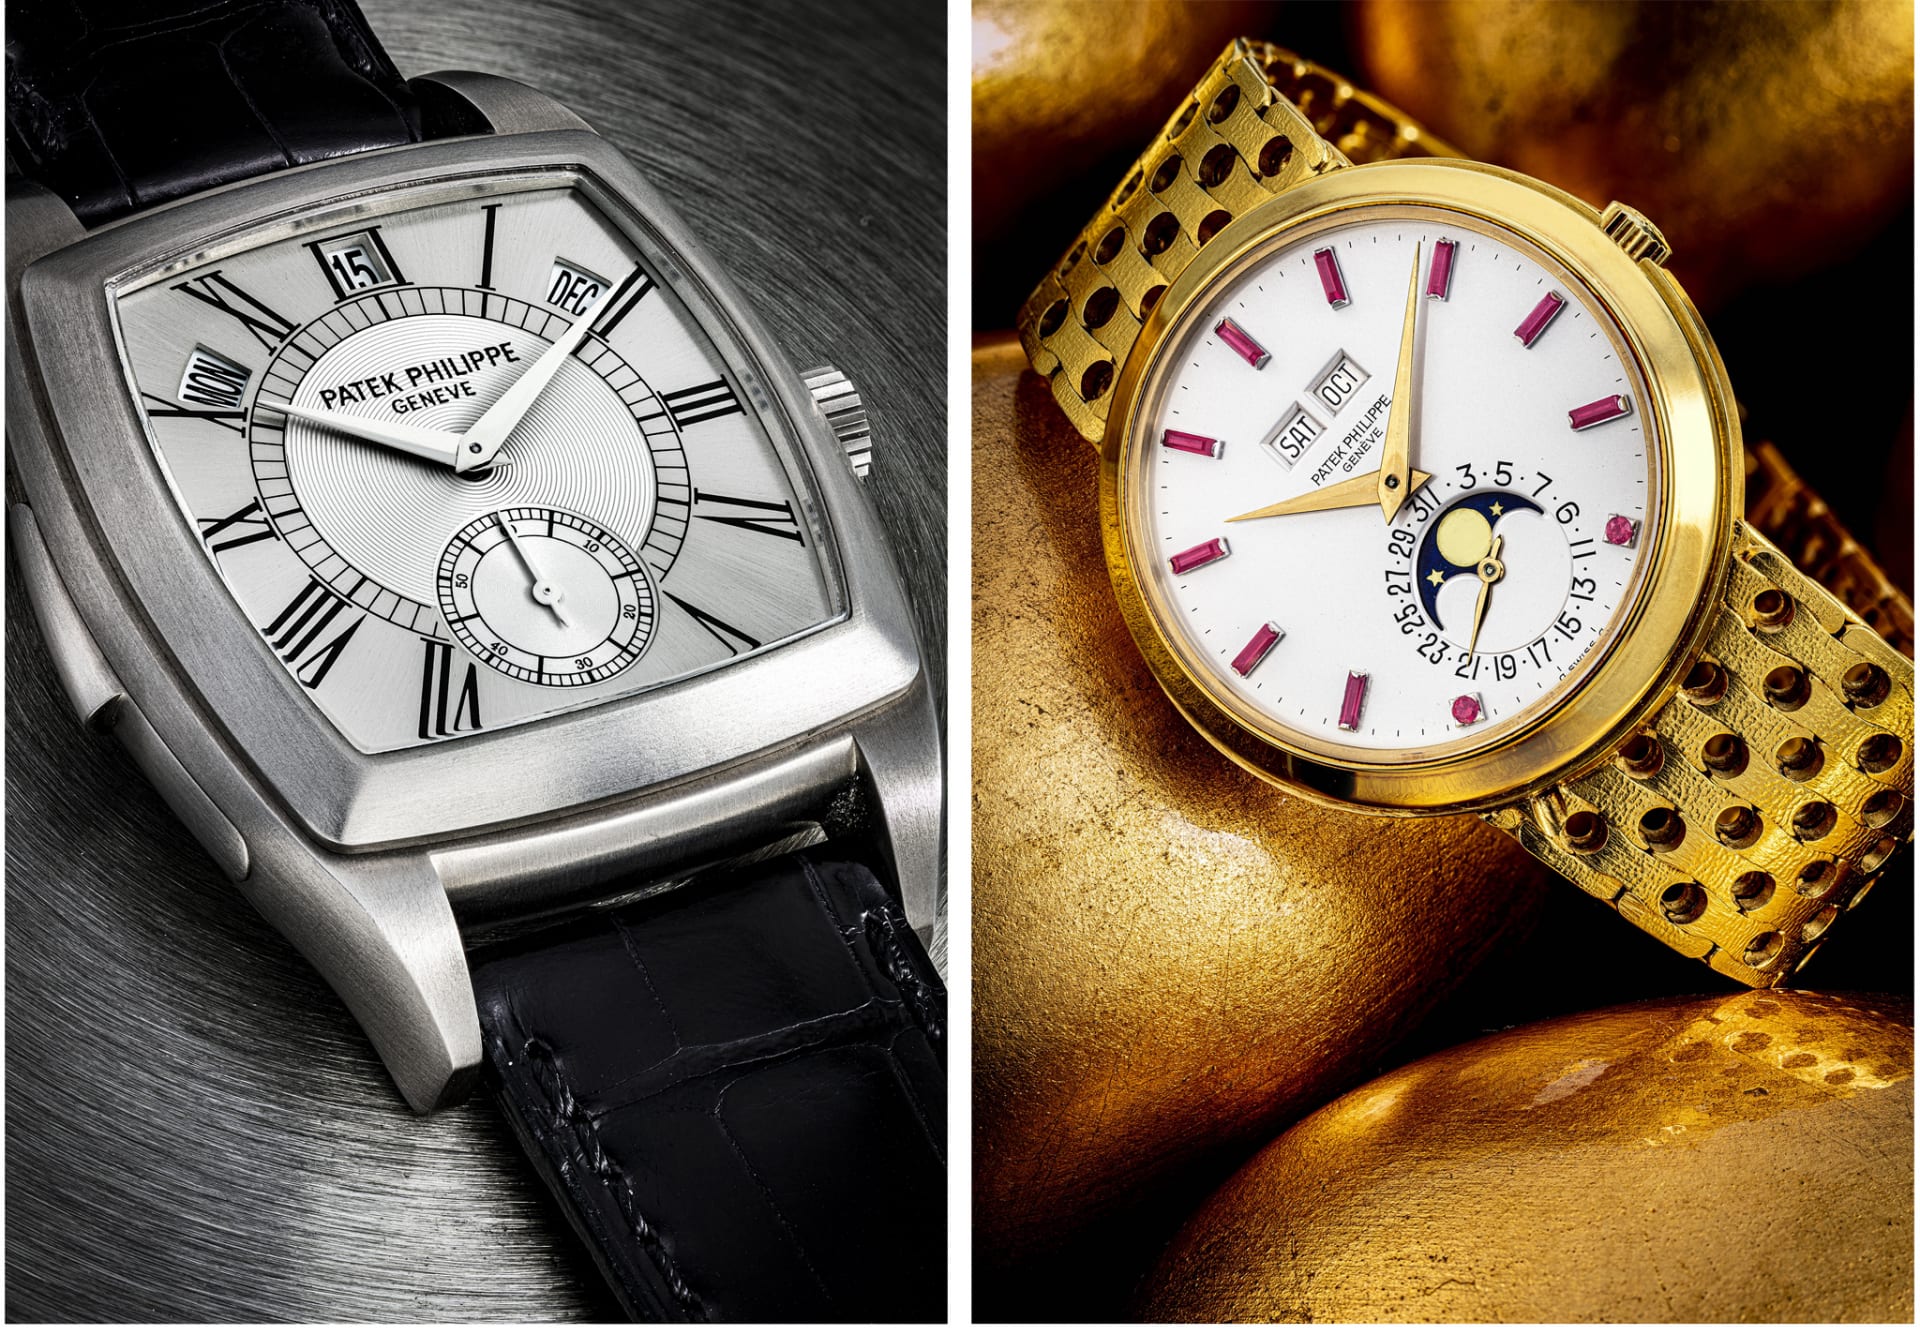 Bộ sưu tập đồng hồ Patek Philippe trị giá 8 triệu USD sẽ được bán đấu giá tại Christie